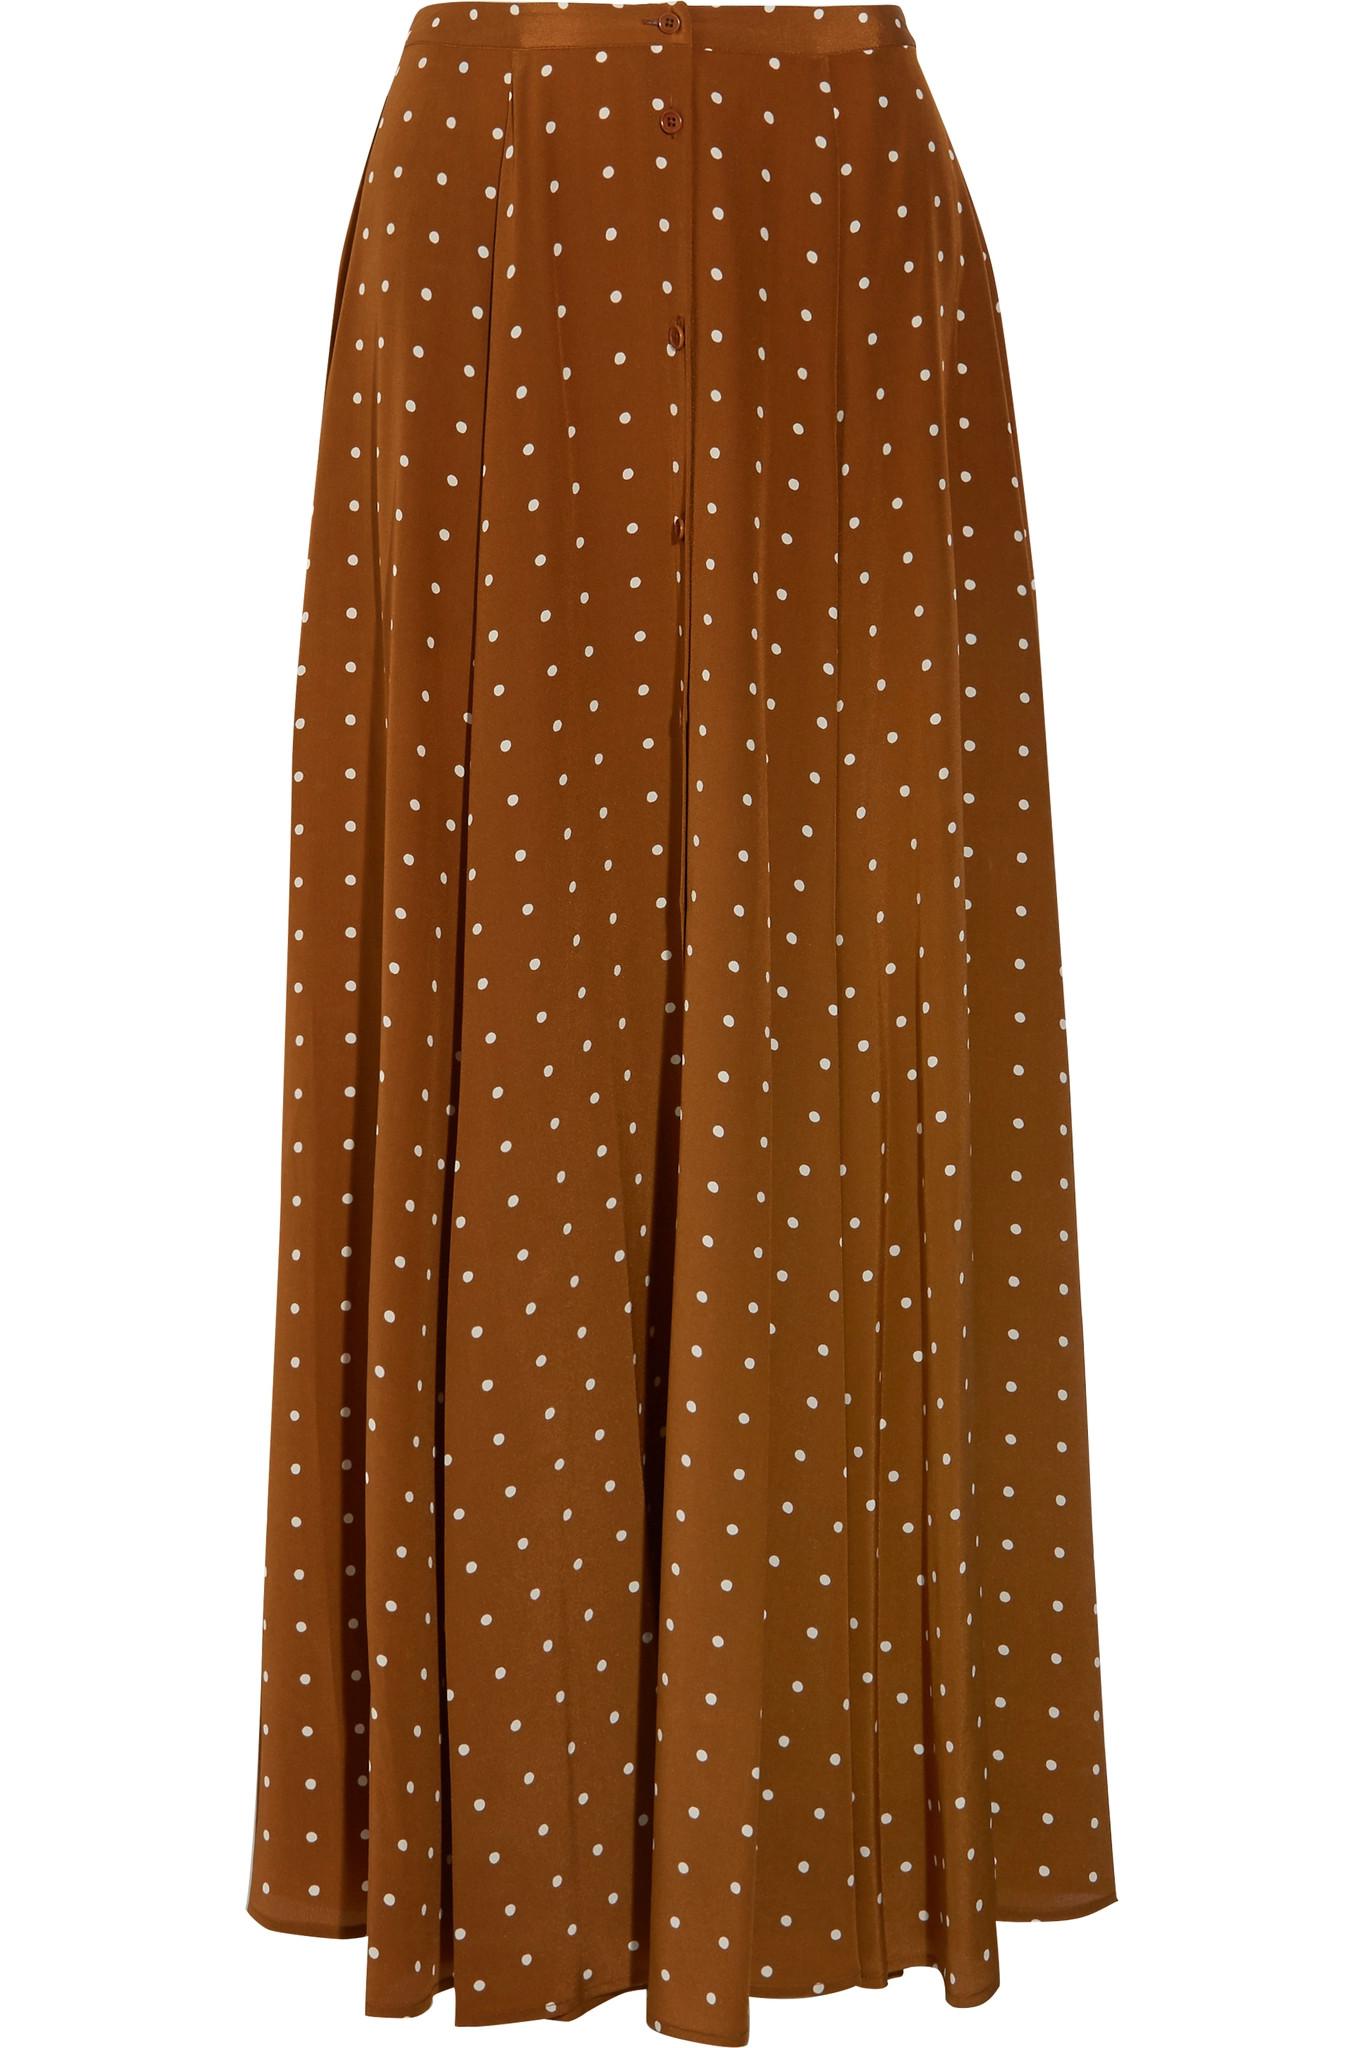 Diane von Furstenberg Pleated Polka-dot Silk Maxi Skirt in Brown | Lyst UK